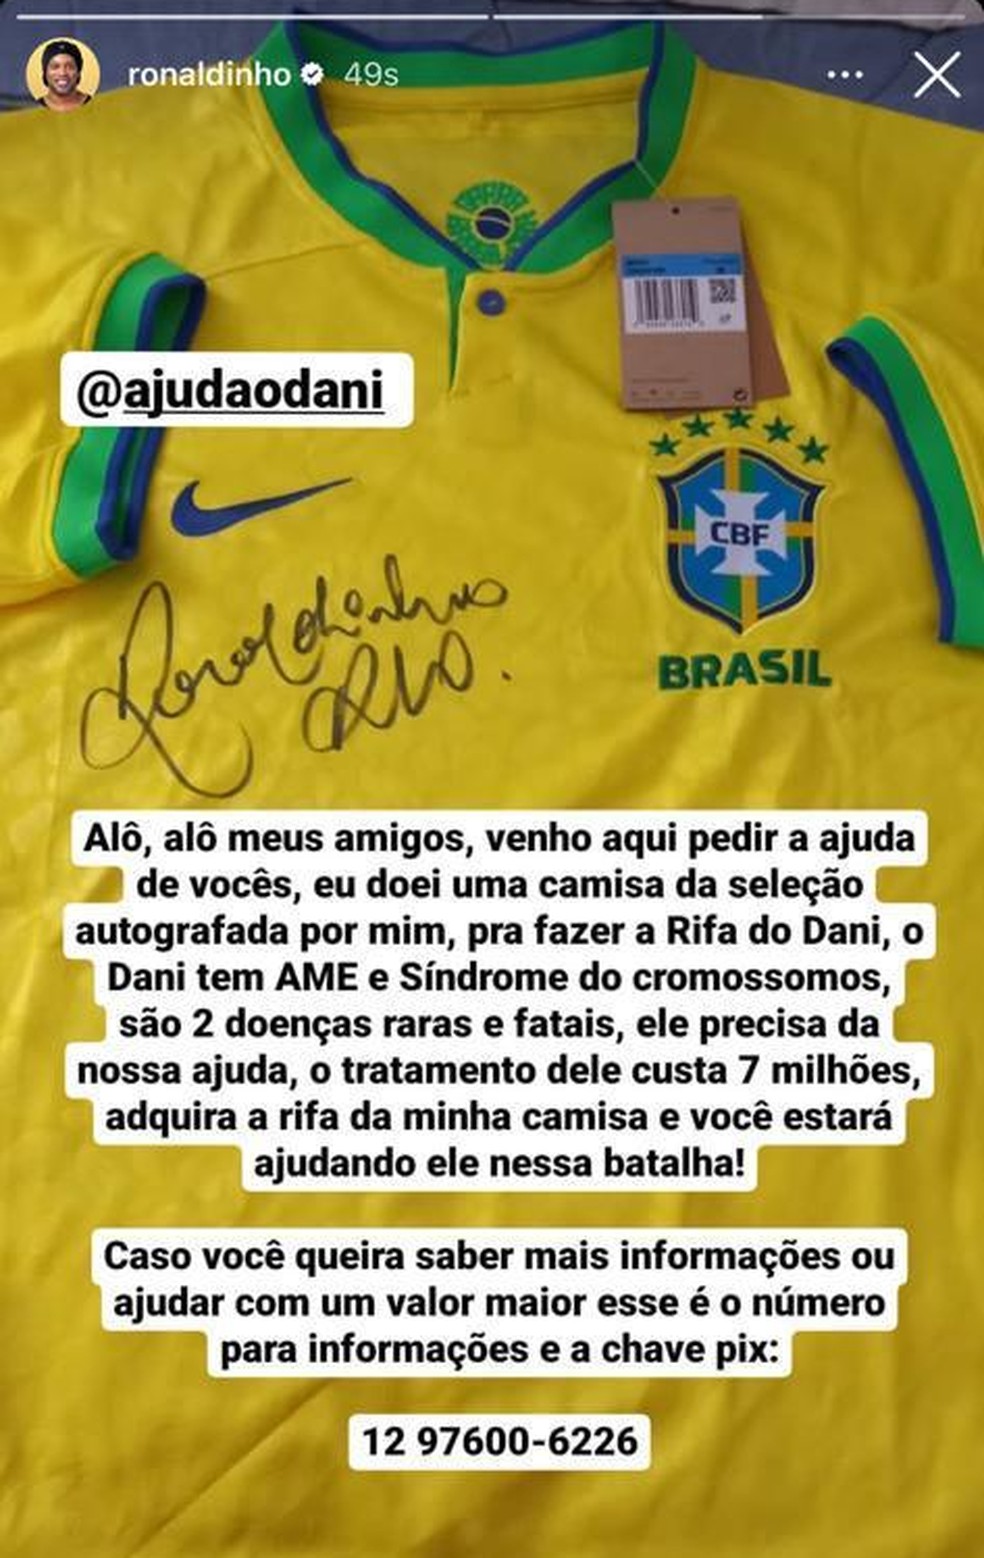 Par de Camisas 10 autografadas pelo Jogador Ronaldinho Gaúcho